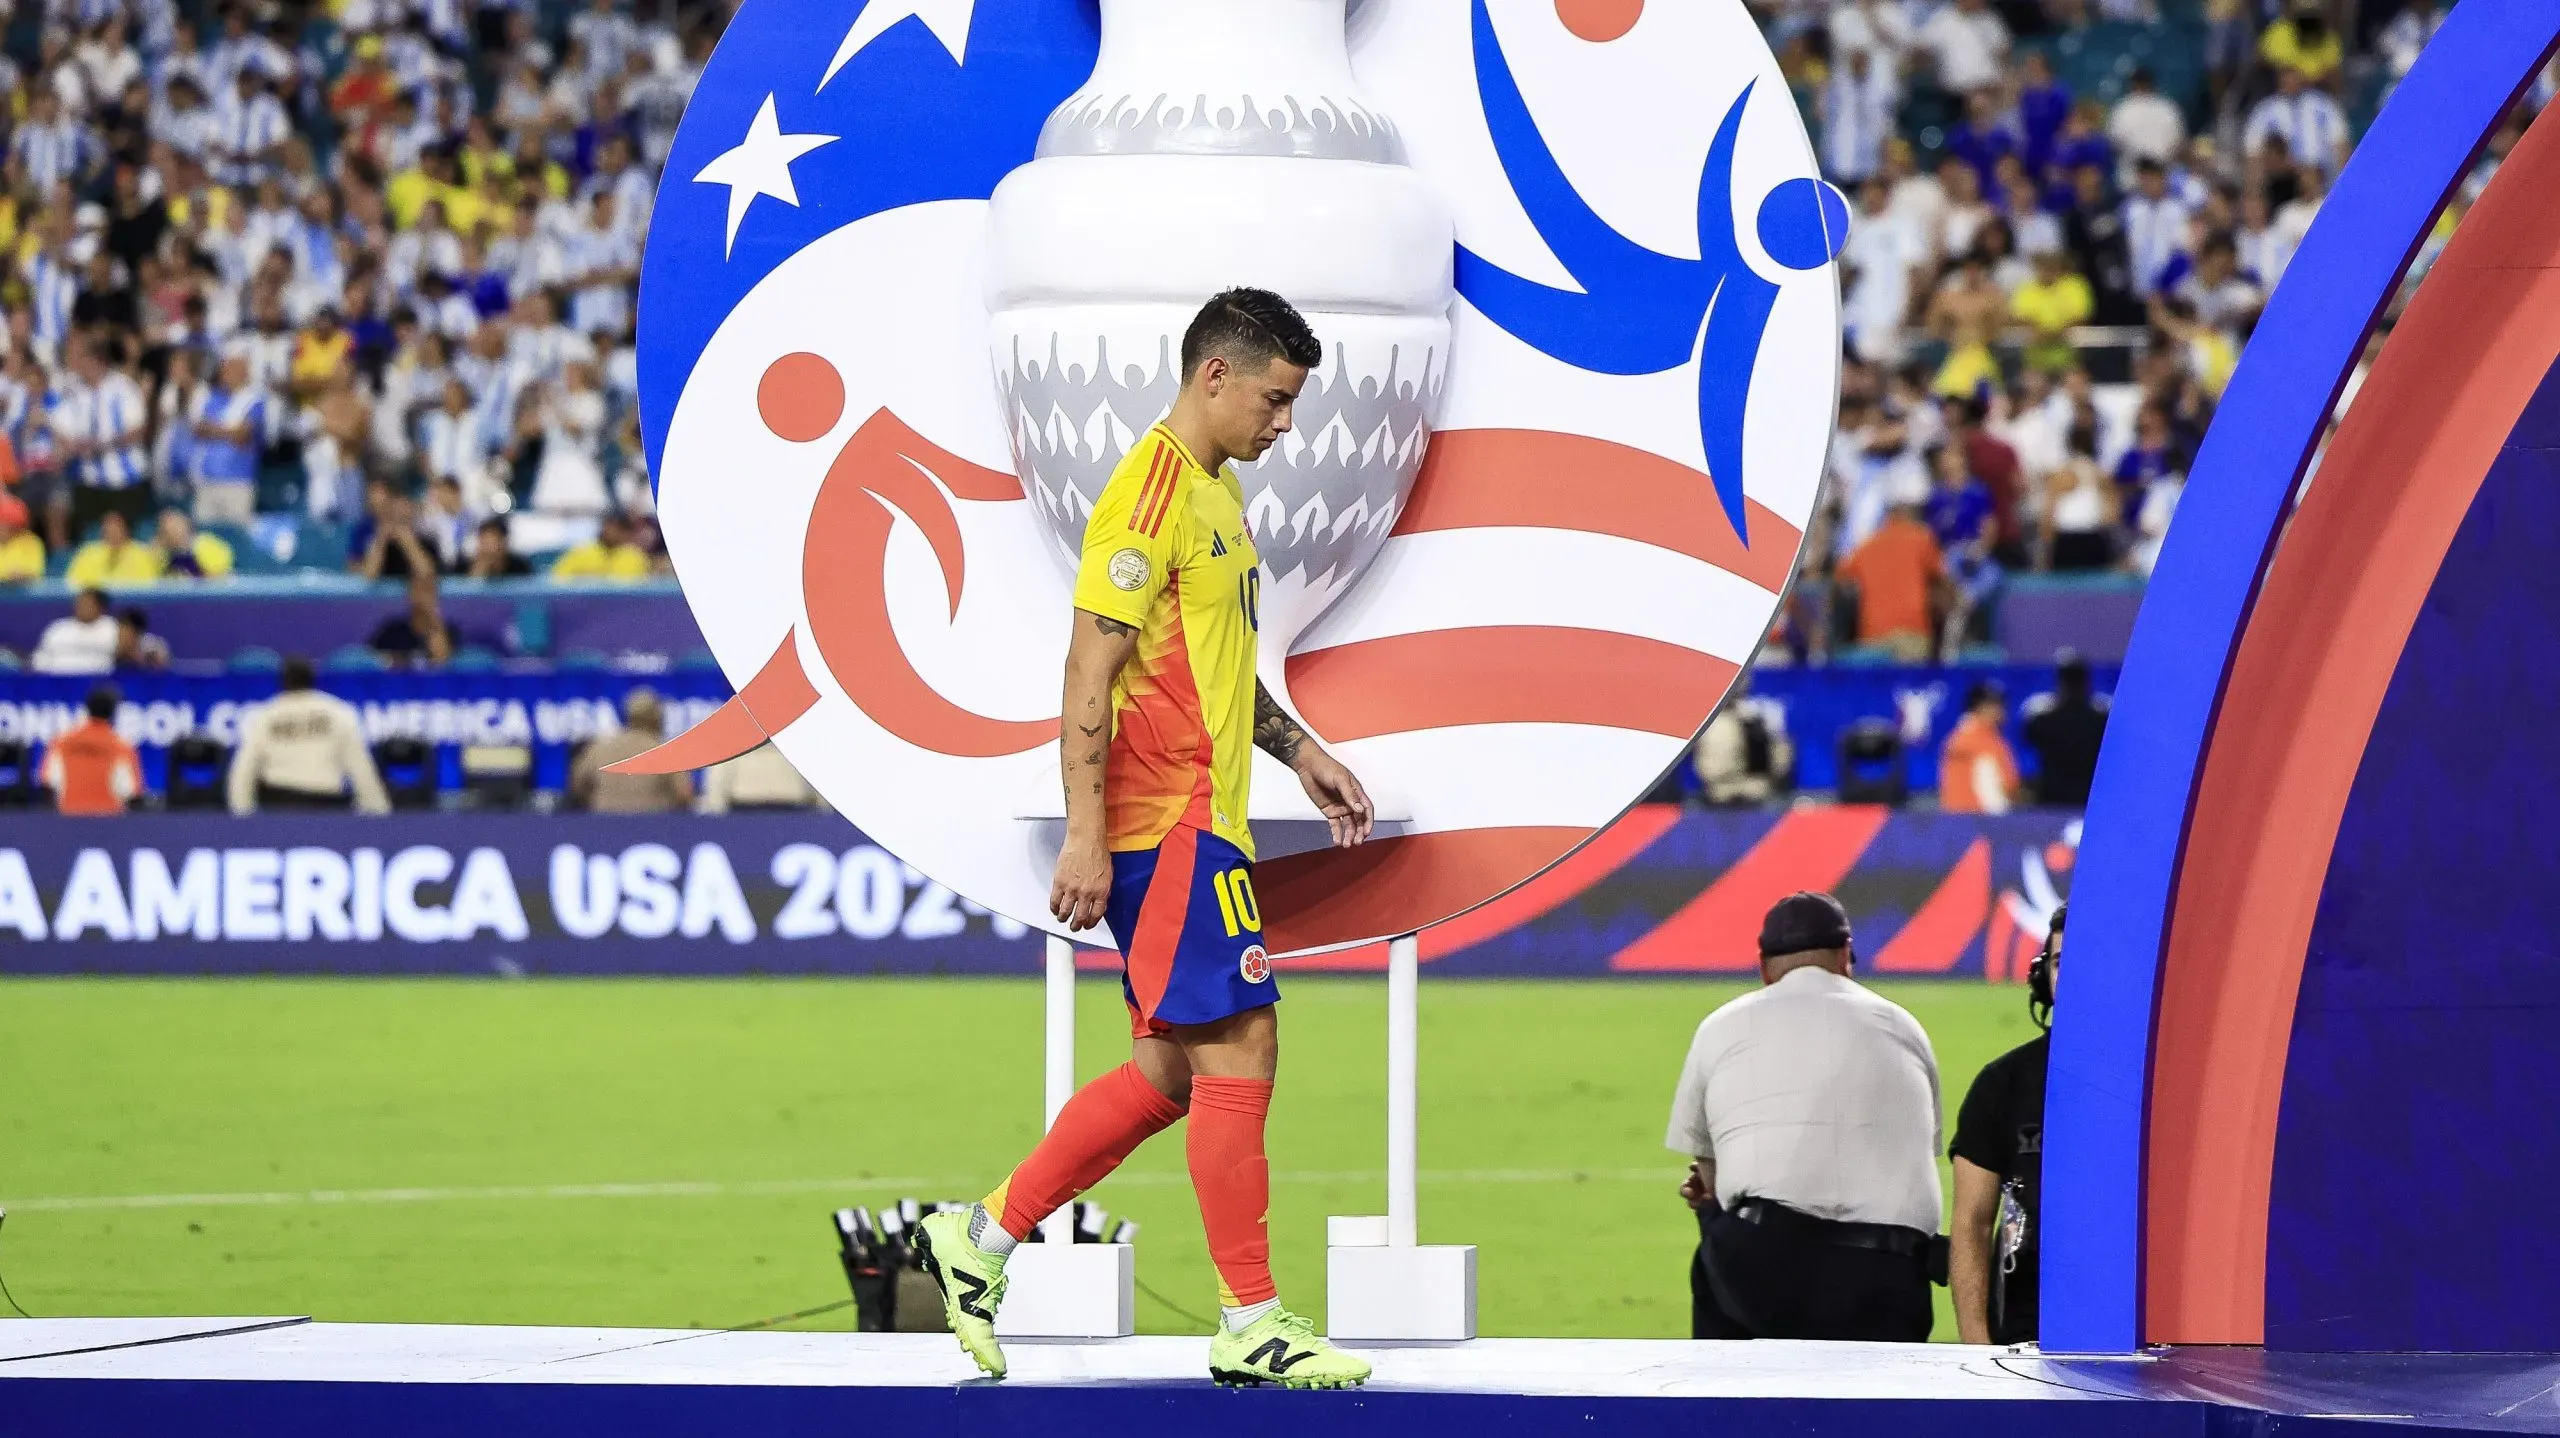 James mientras va a recibir el galardón de MVP de Copa América. (Photo by Buda Mendes/Getty Images)